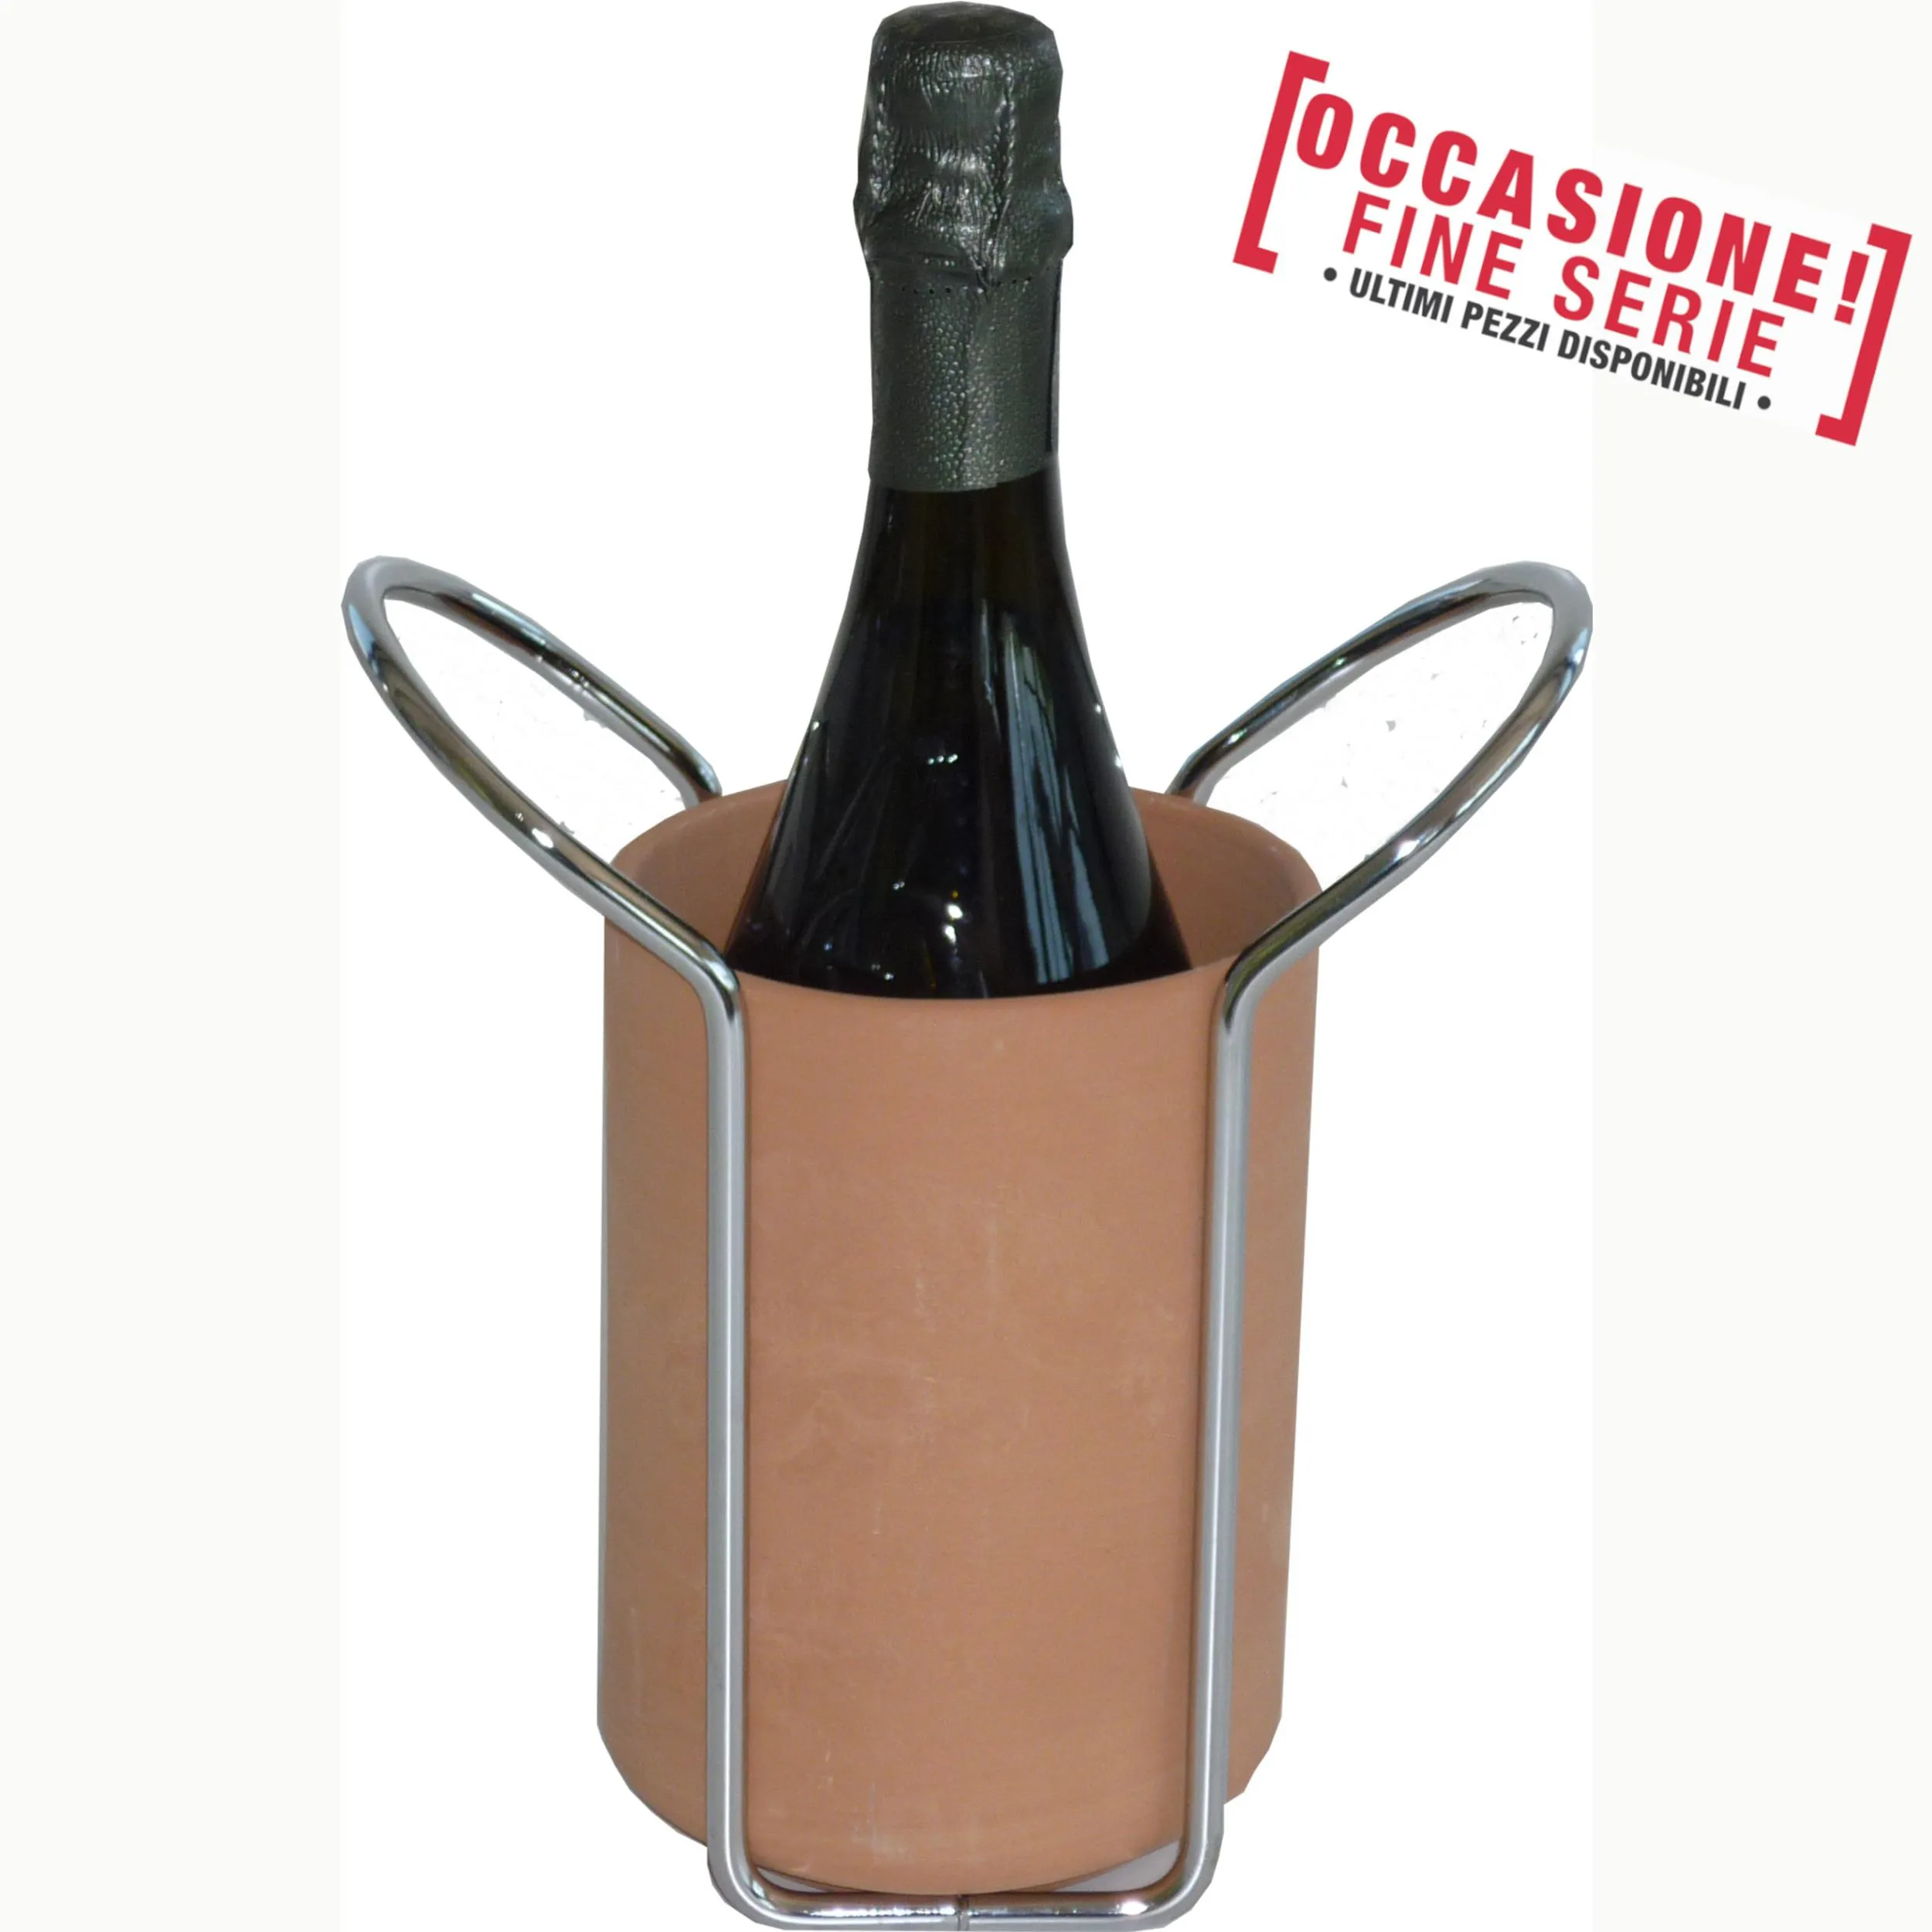 Porta vino Termico In terracotta 10x17xh 23 cm cm in filo cromato e terracotta adatto per bar ristoranti enoteche